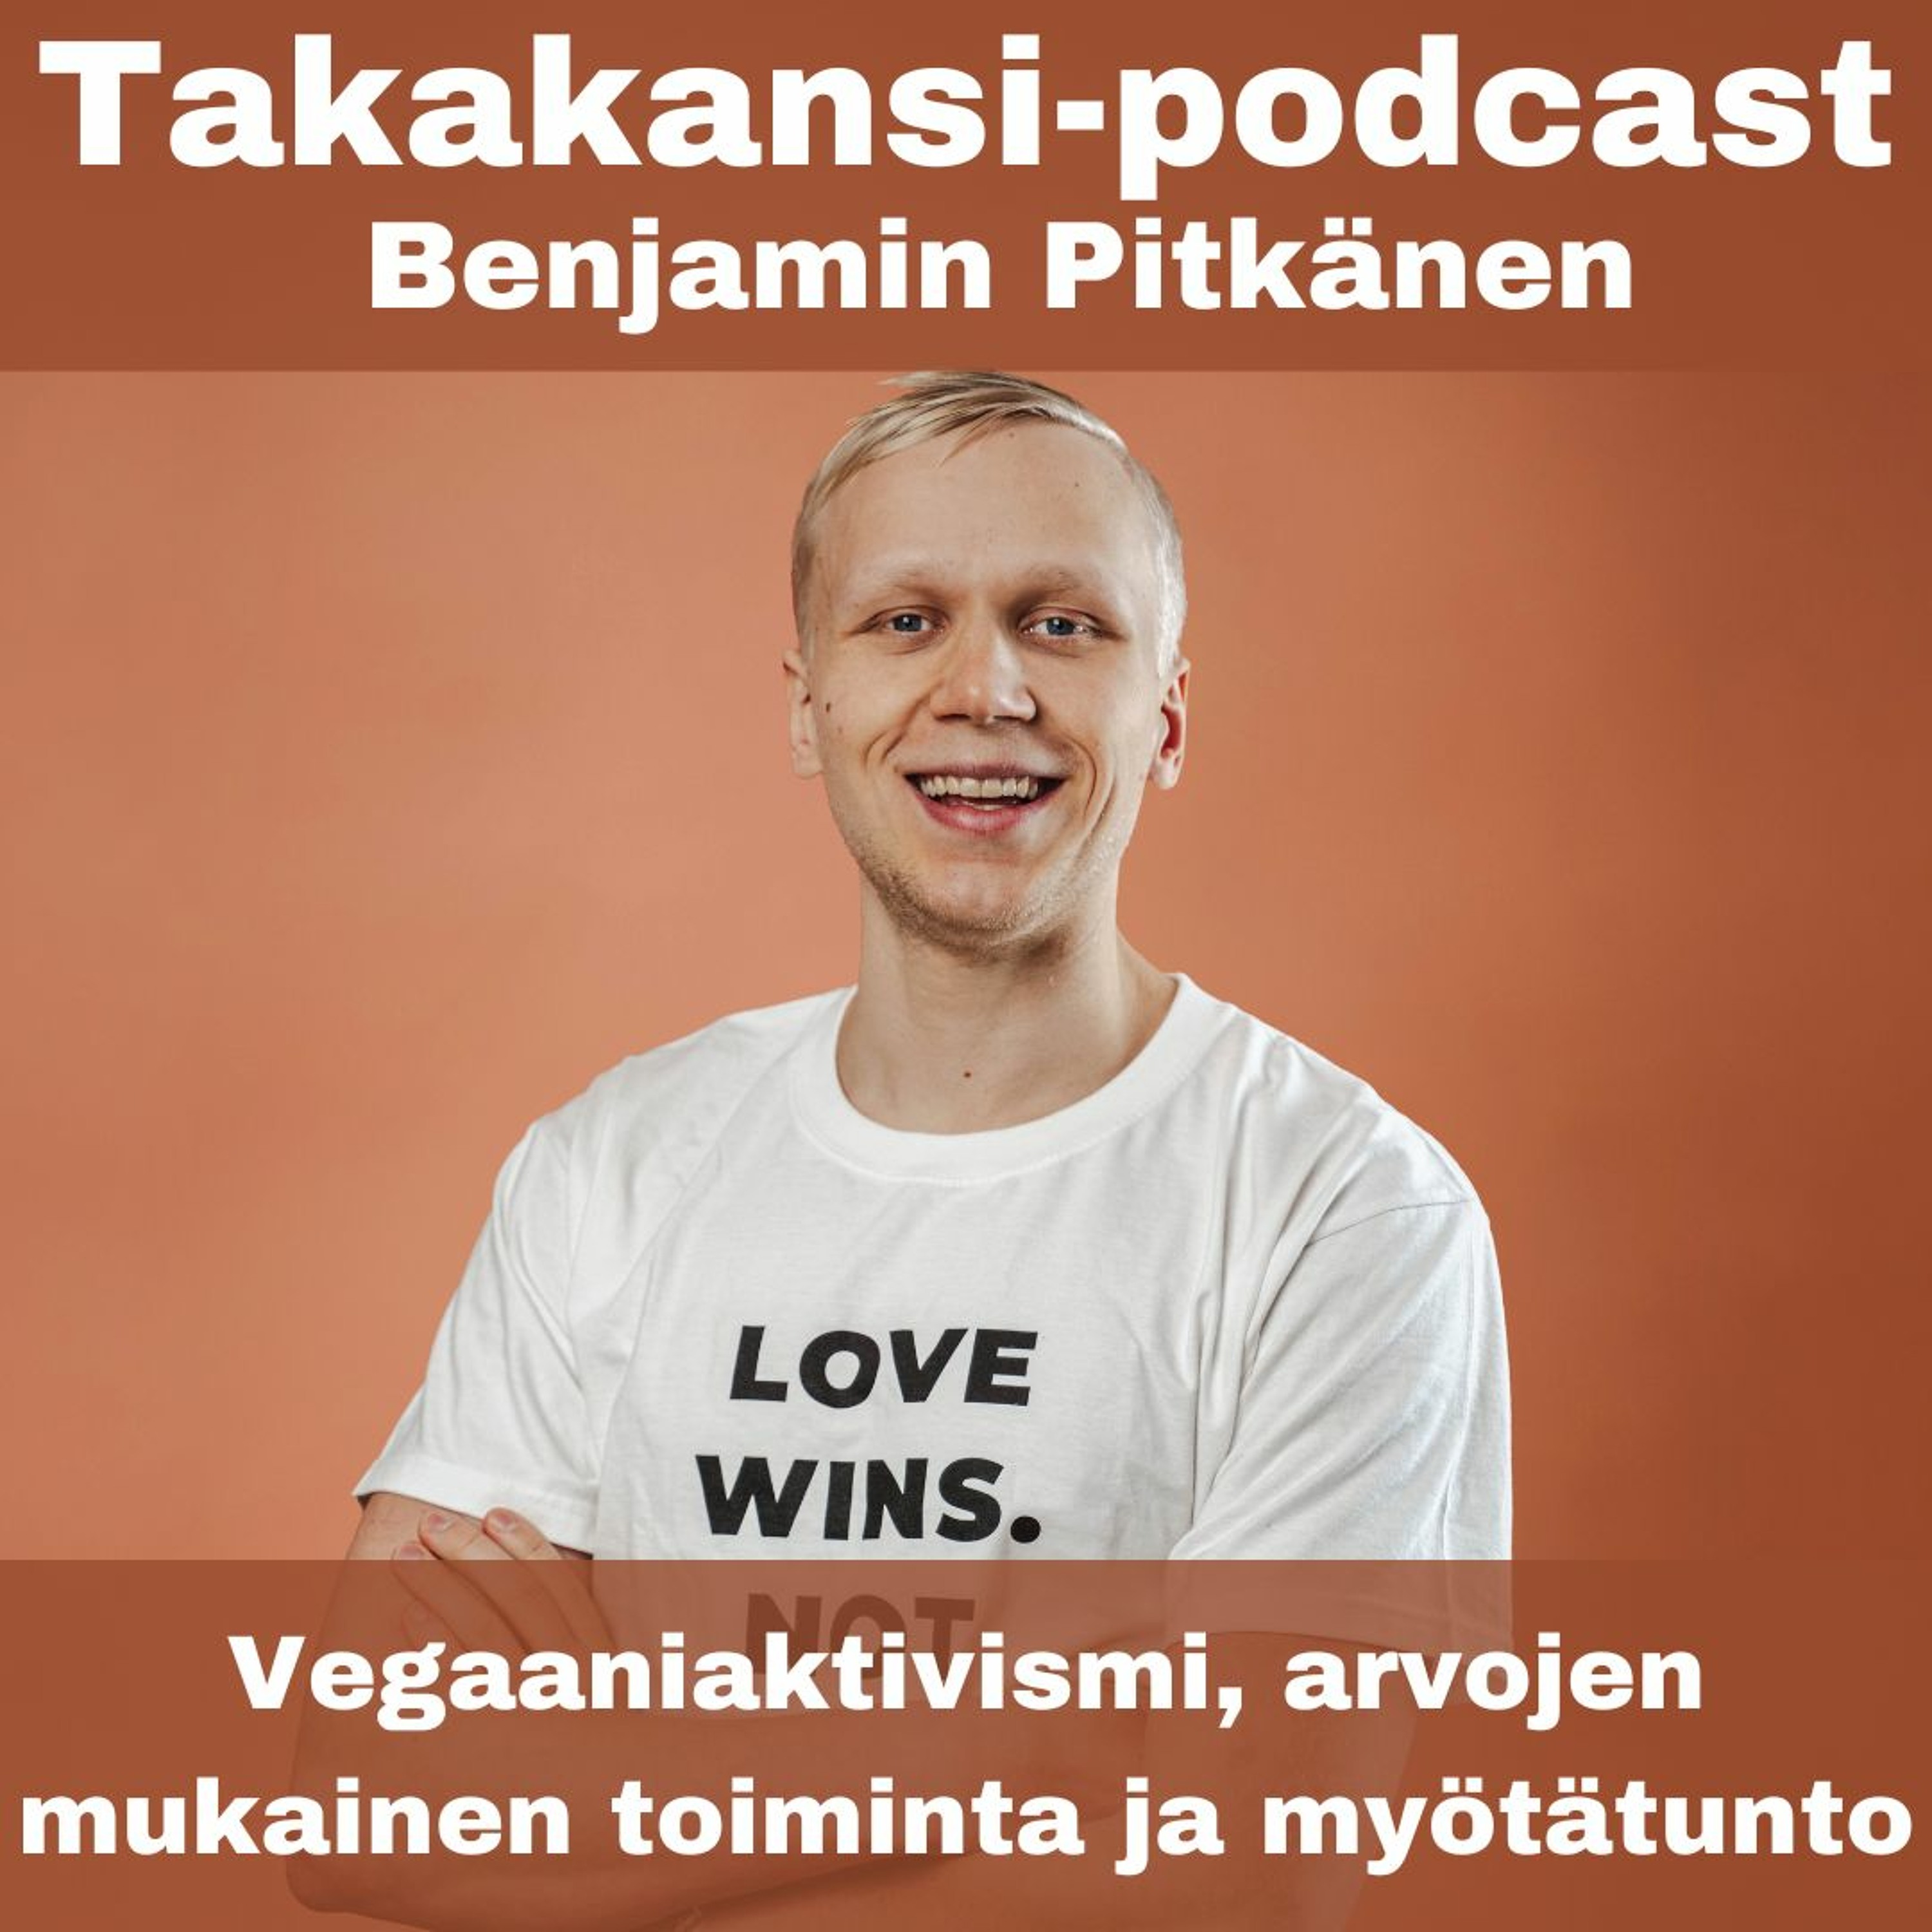 Benjamin Pitkänen - Vegaaniaktivismi, arvojen mukainen toiminta ja myötätunto